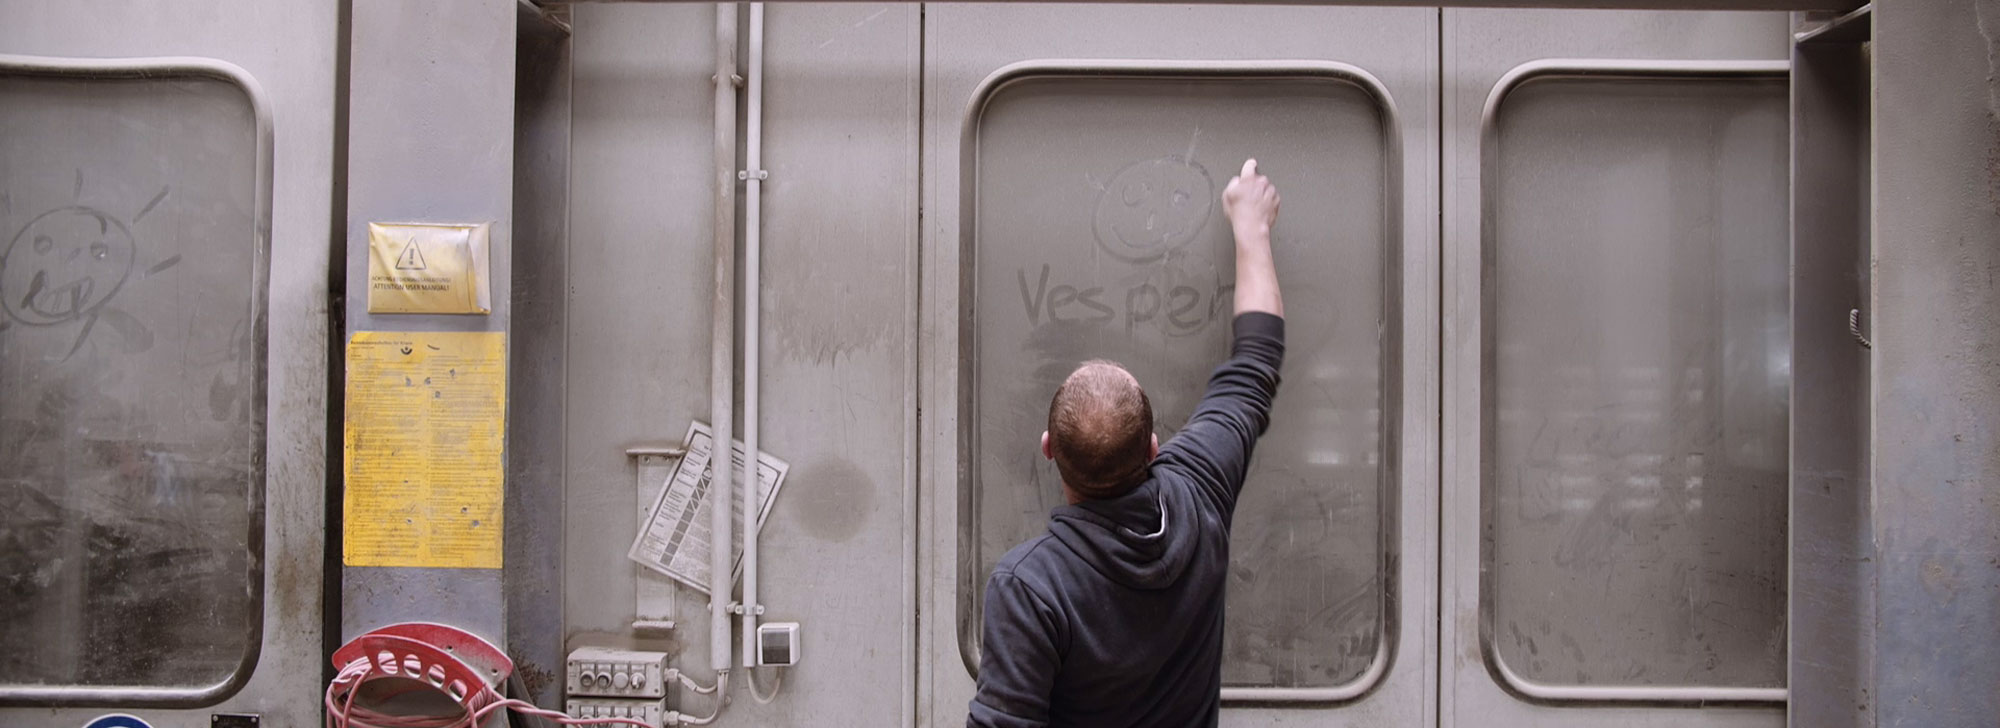 Ein Arbeiter schreibt in eine verstaubte Glastür "VESPER"